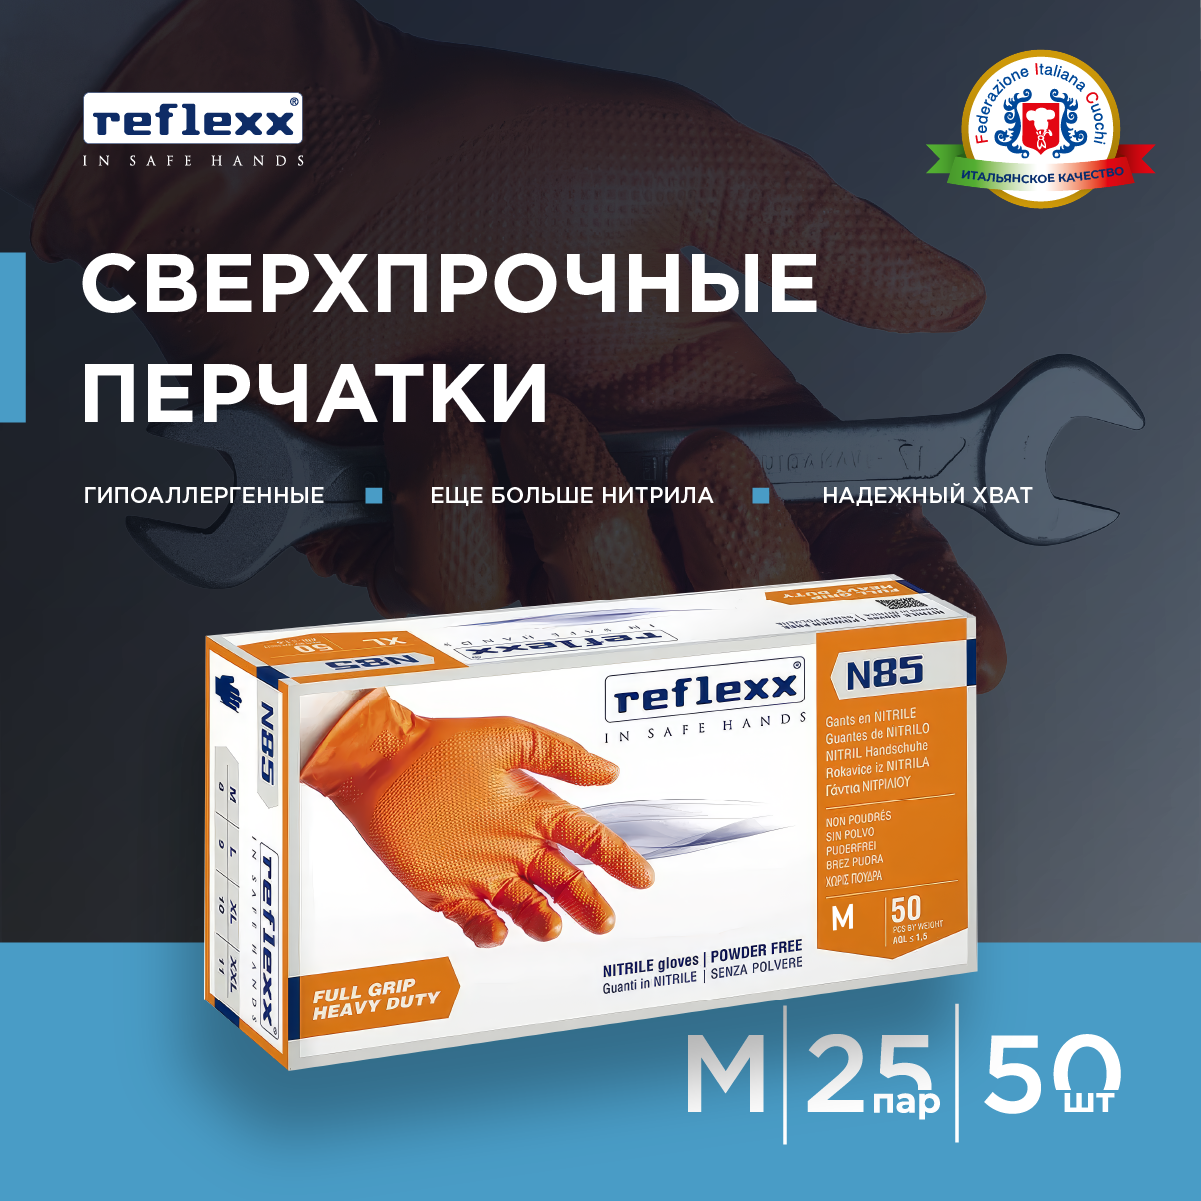 Reflexx | Nitrile gloves - Сверхпрочные резиновые перчатки, нитриловые. 8,4 гр. Толщина 0,2 мм.